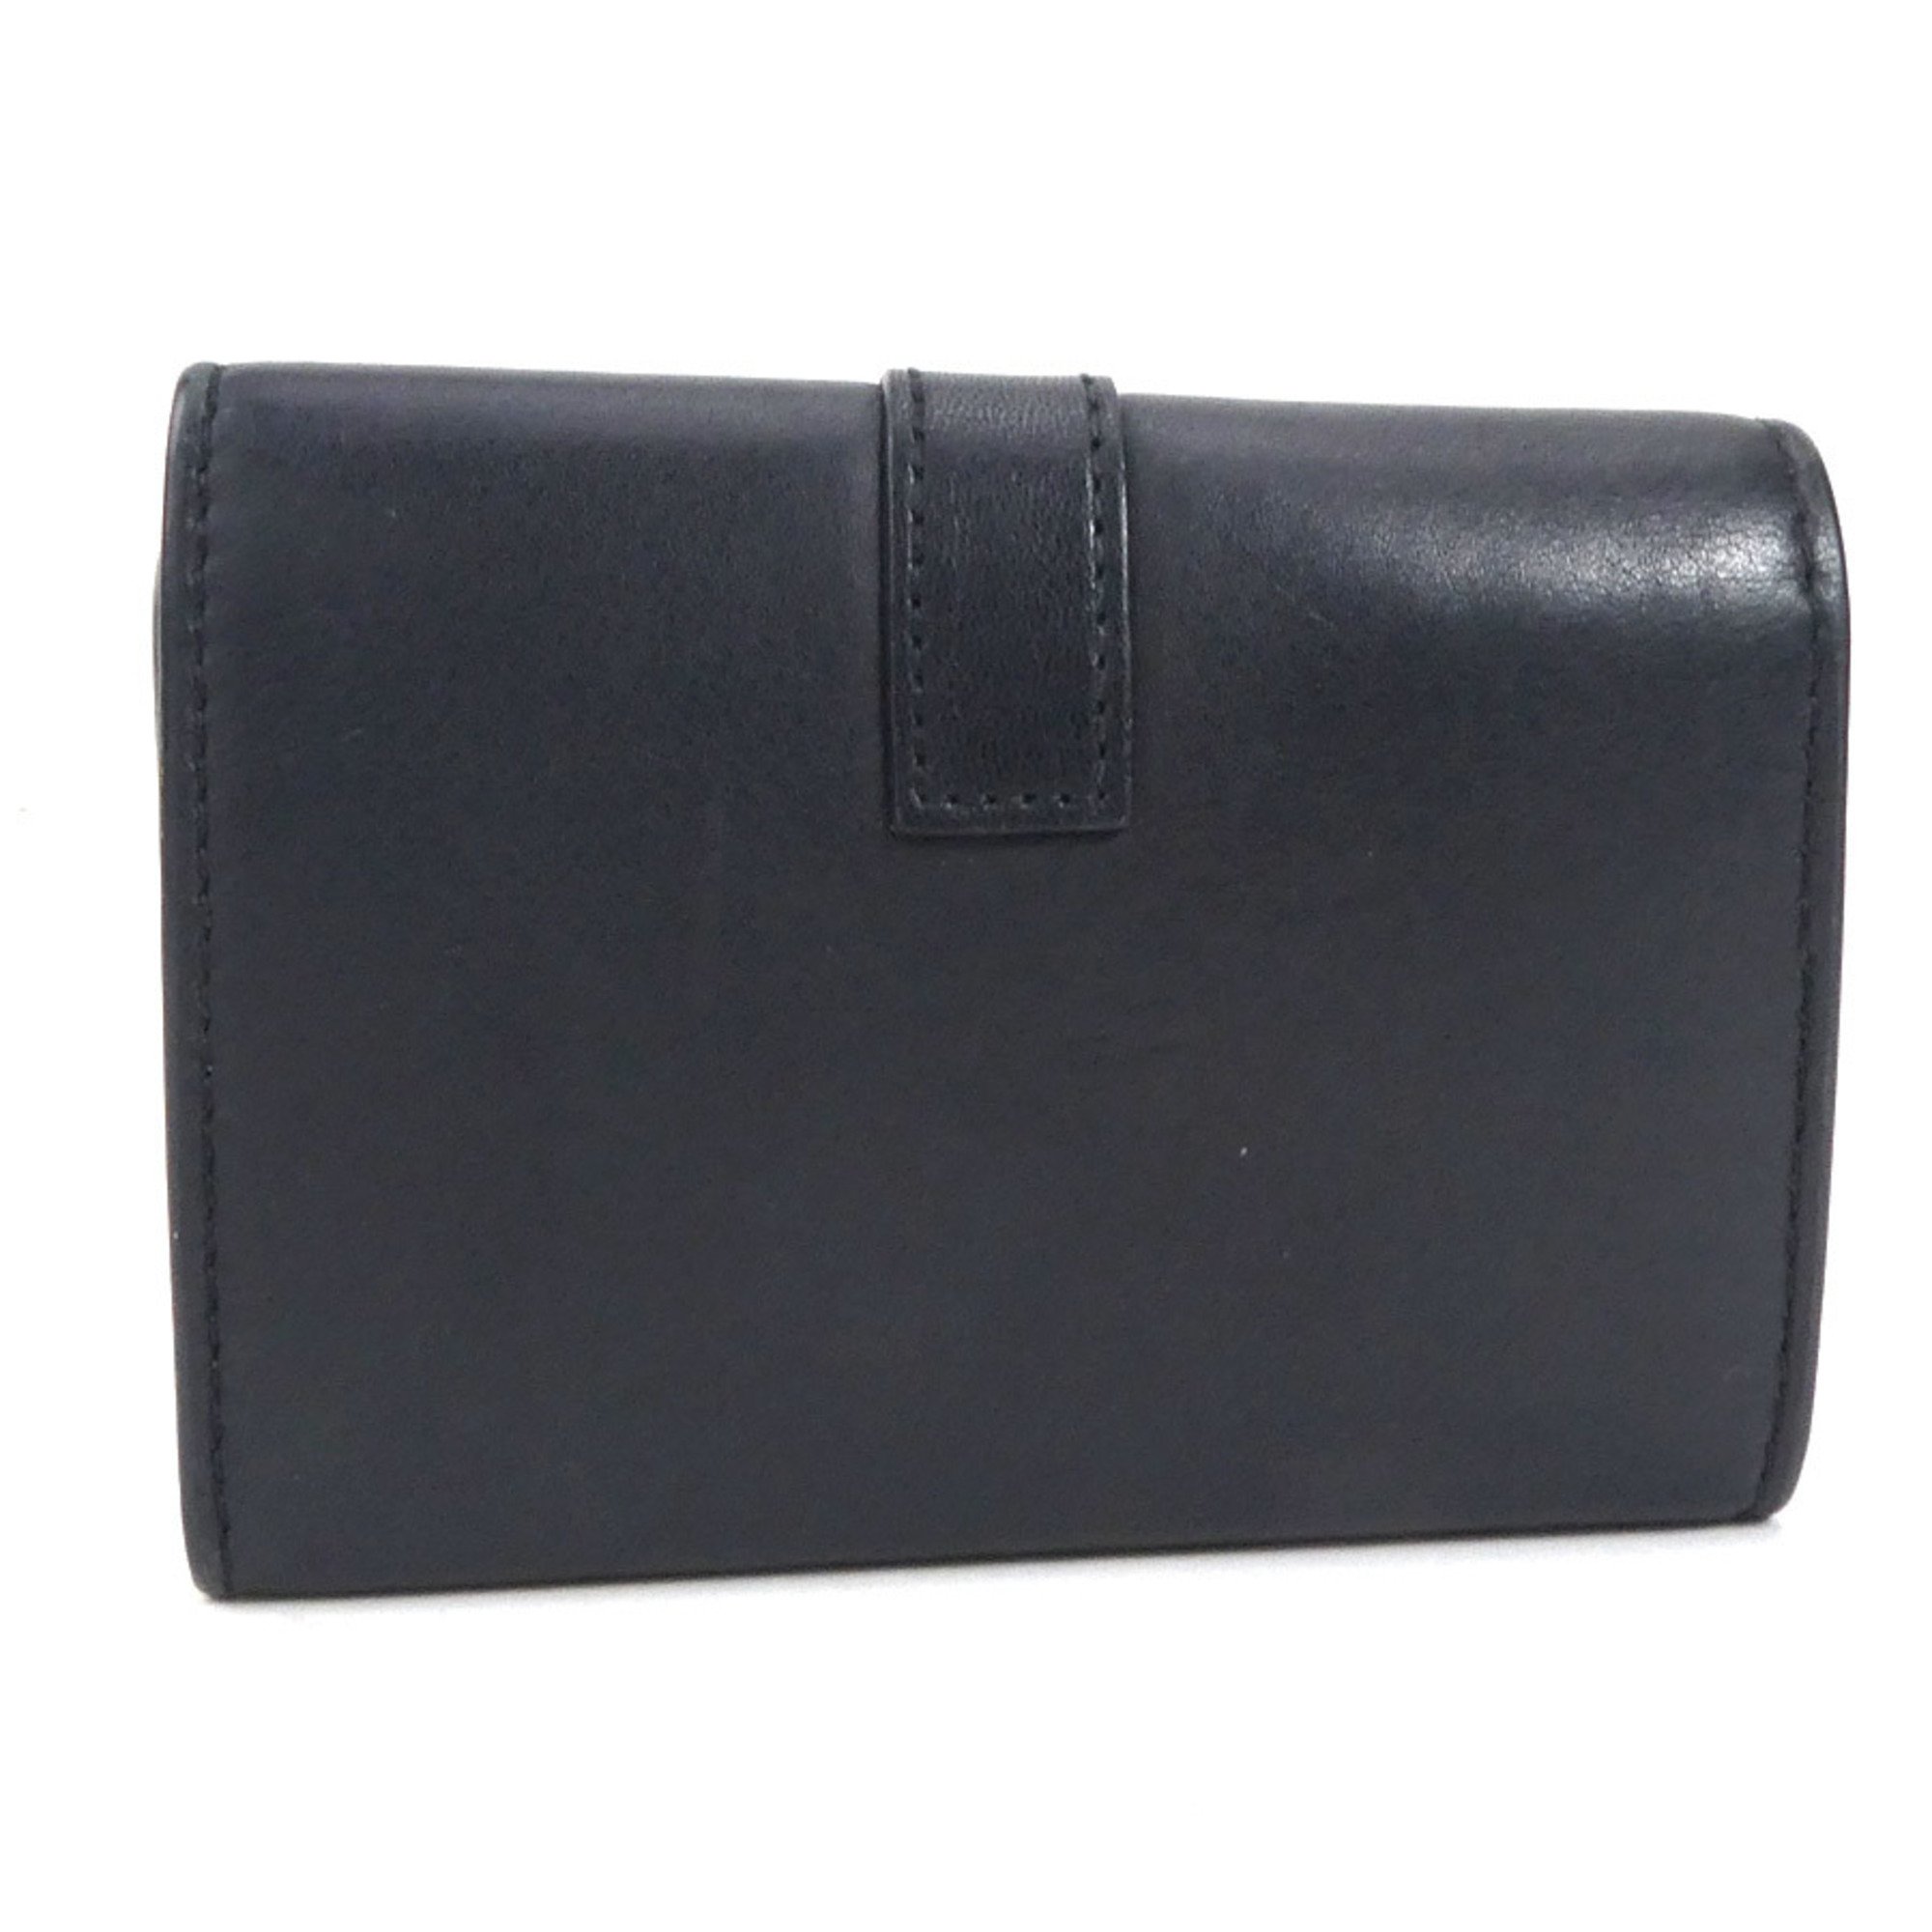 SAINT LAURENT Key Case Leather/Metal Black/Silver Unisex